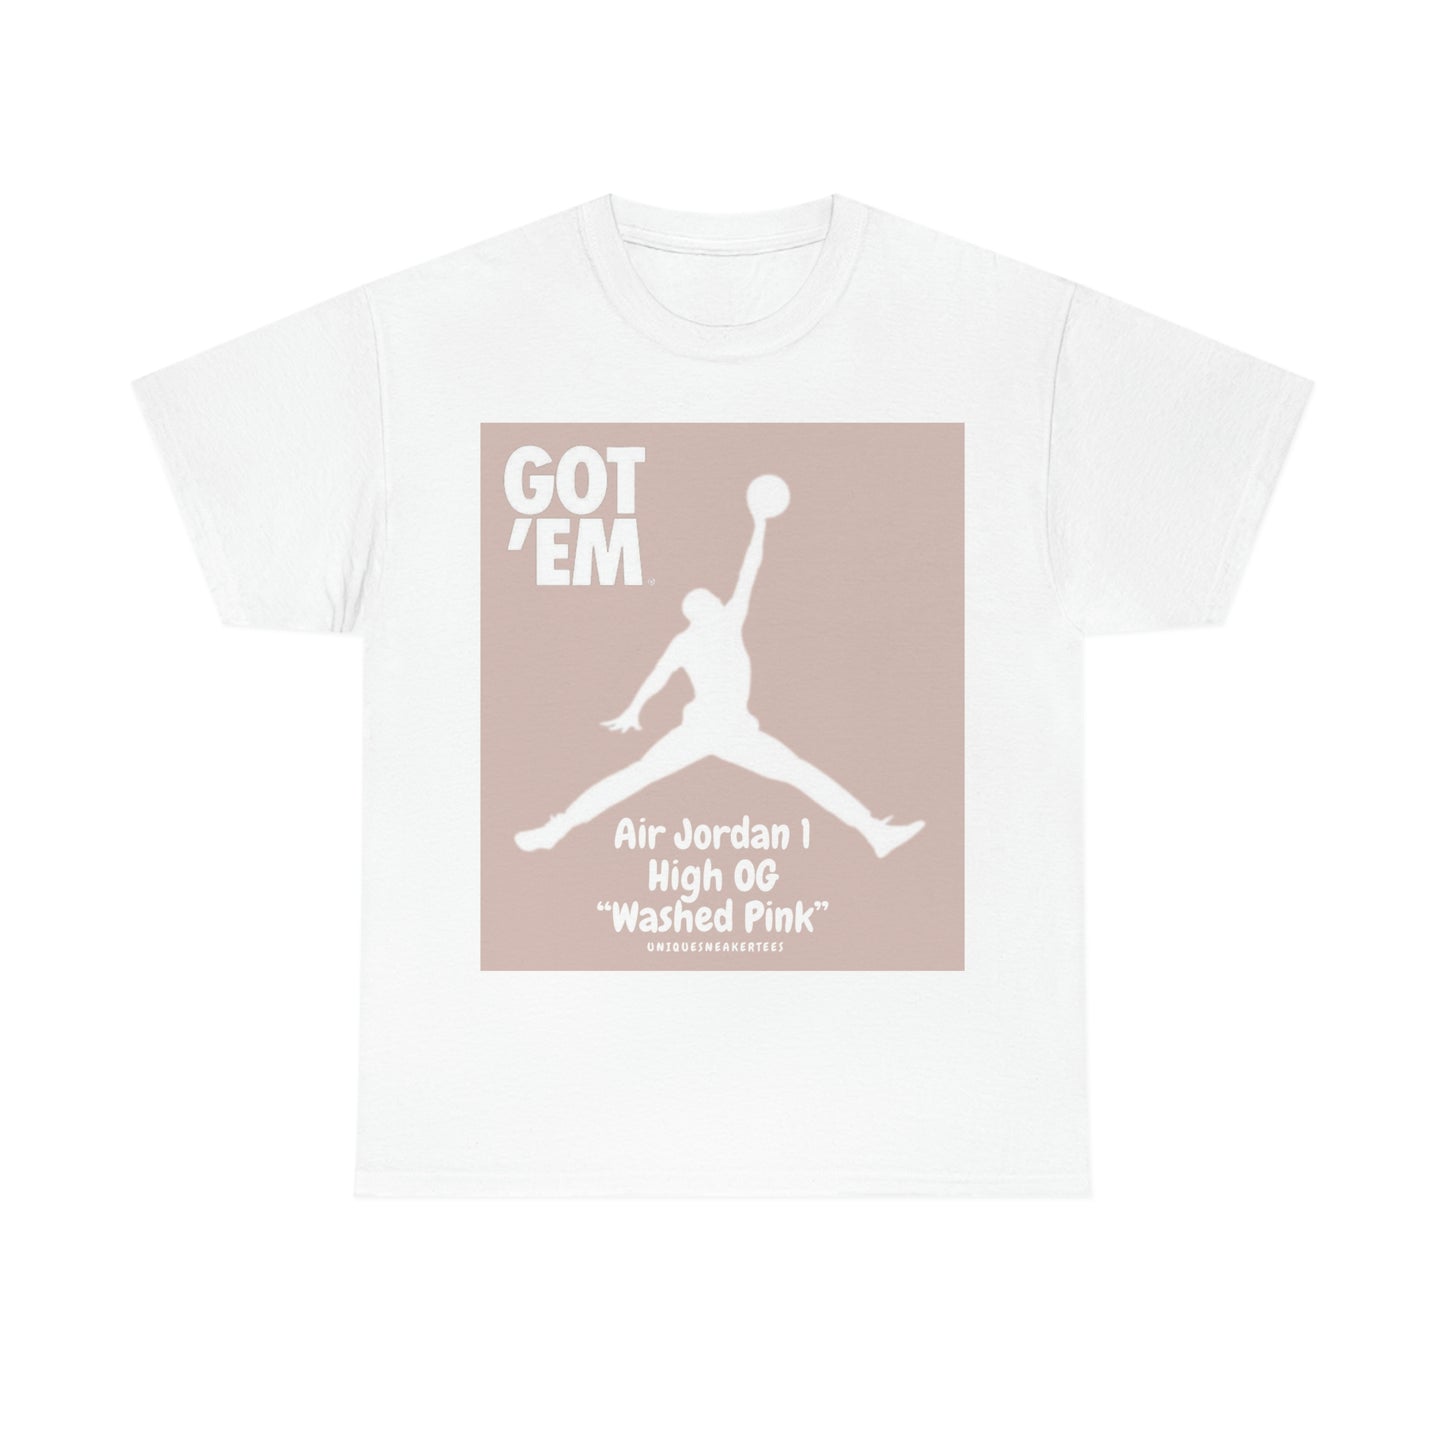 Air Jordan 1 High OG “Washed Pink” Tee